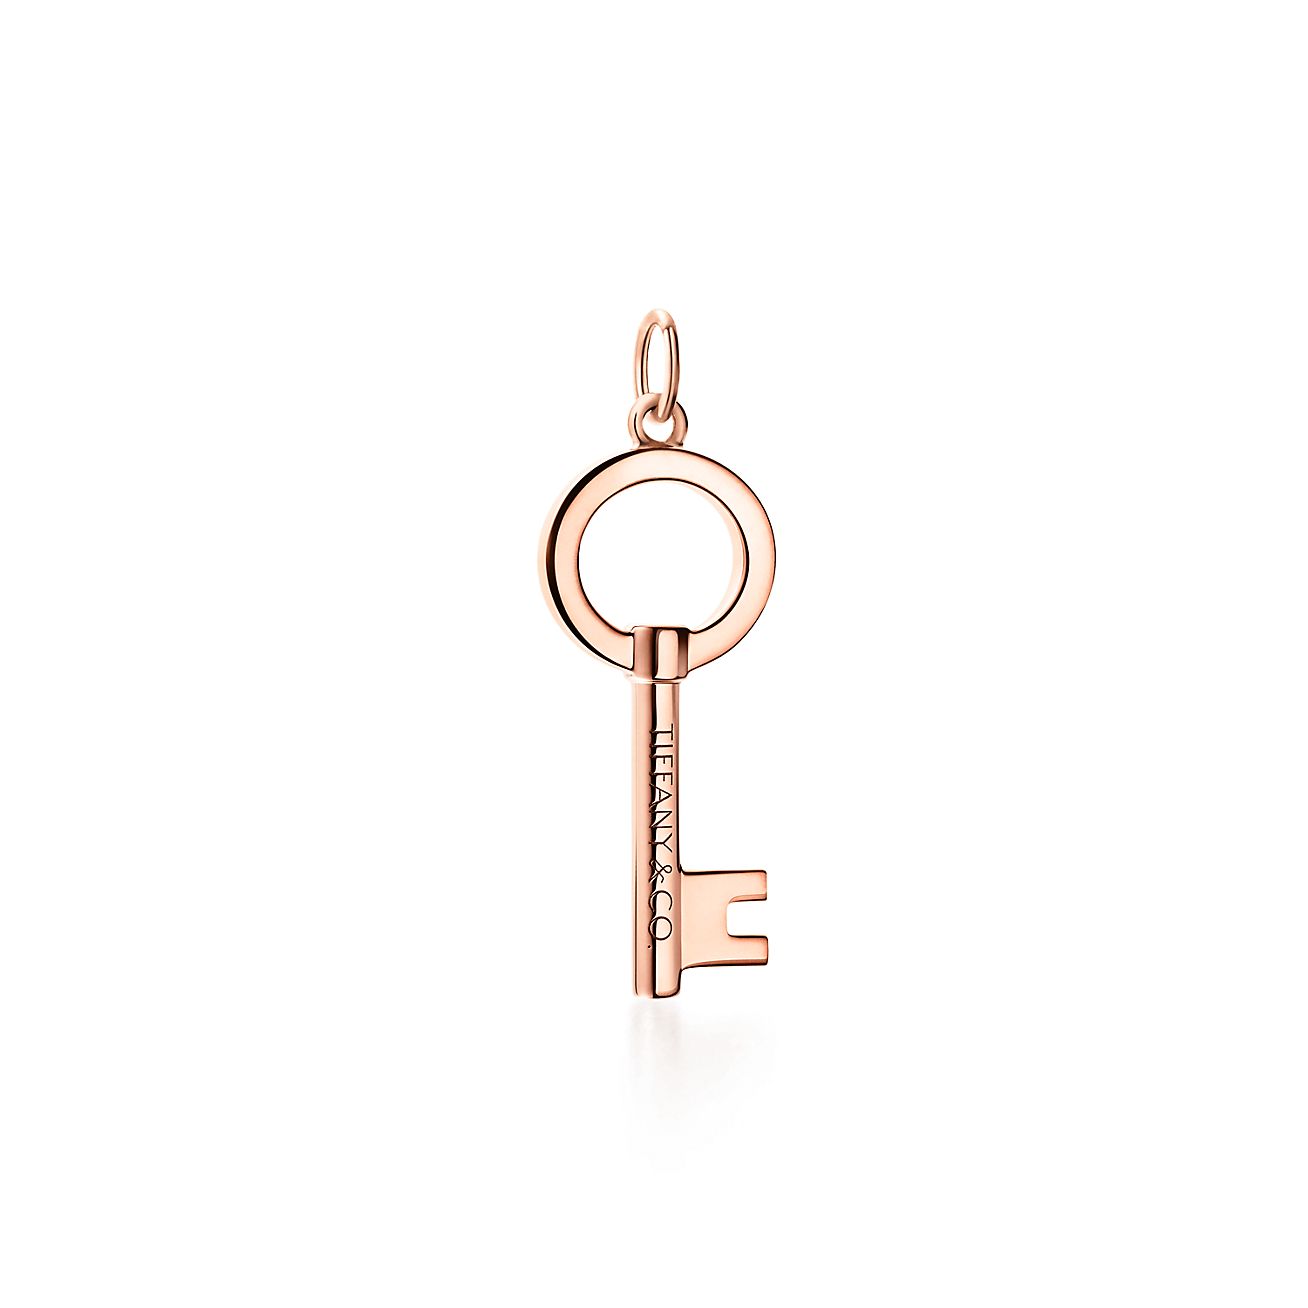 Tiffany Keys modern keys open round key 